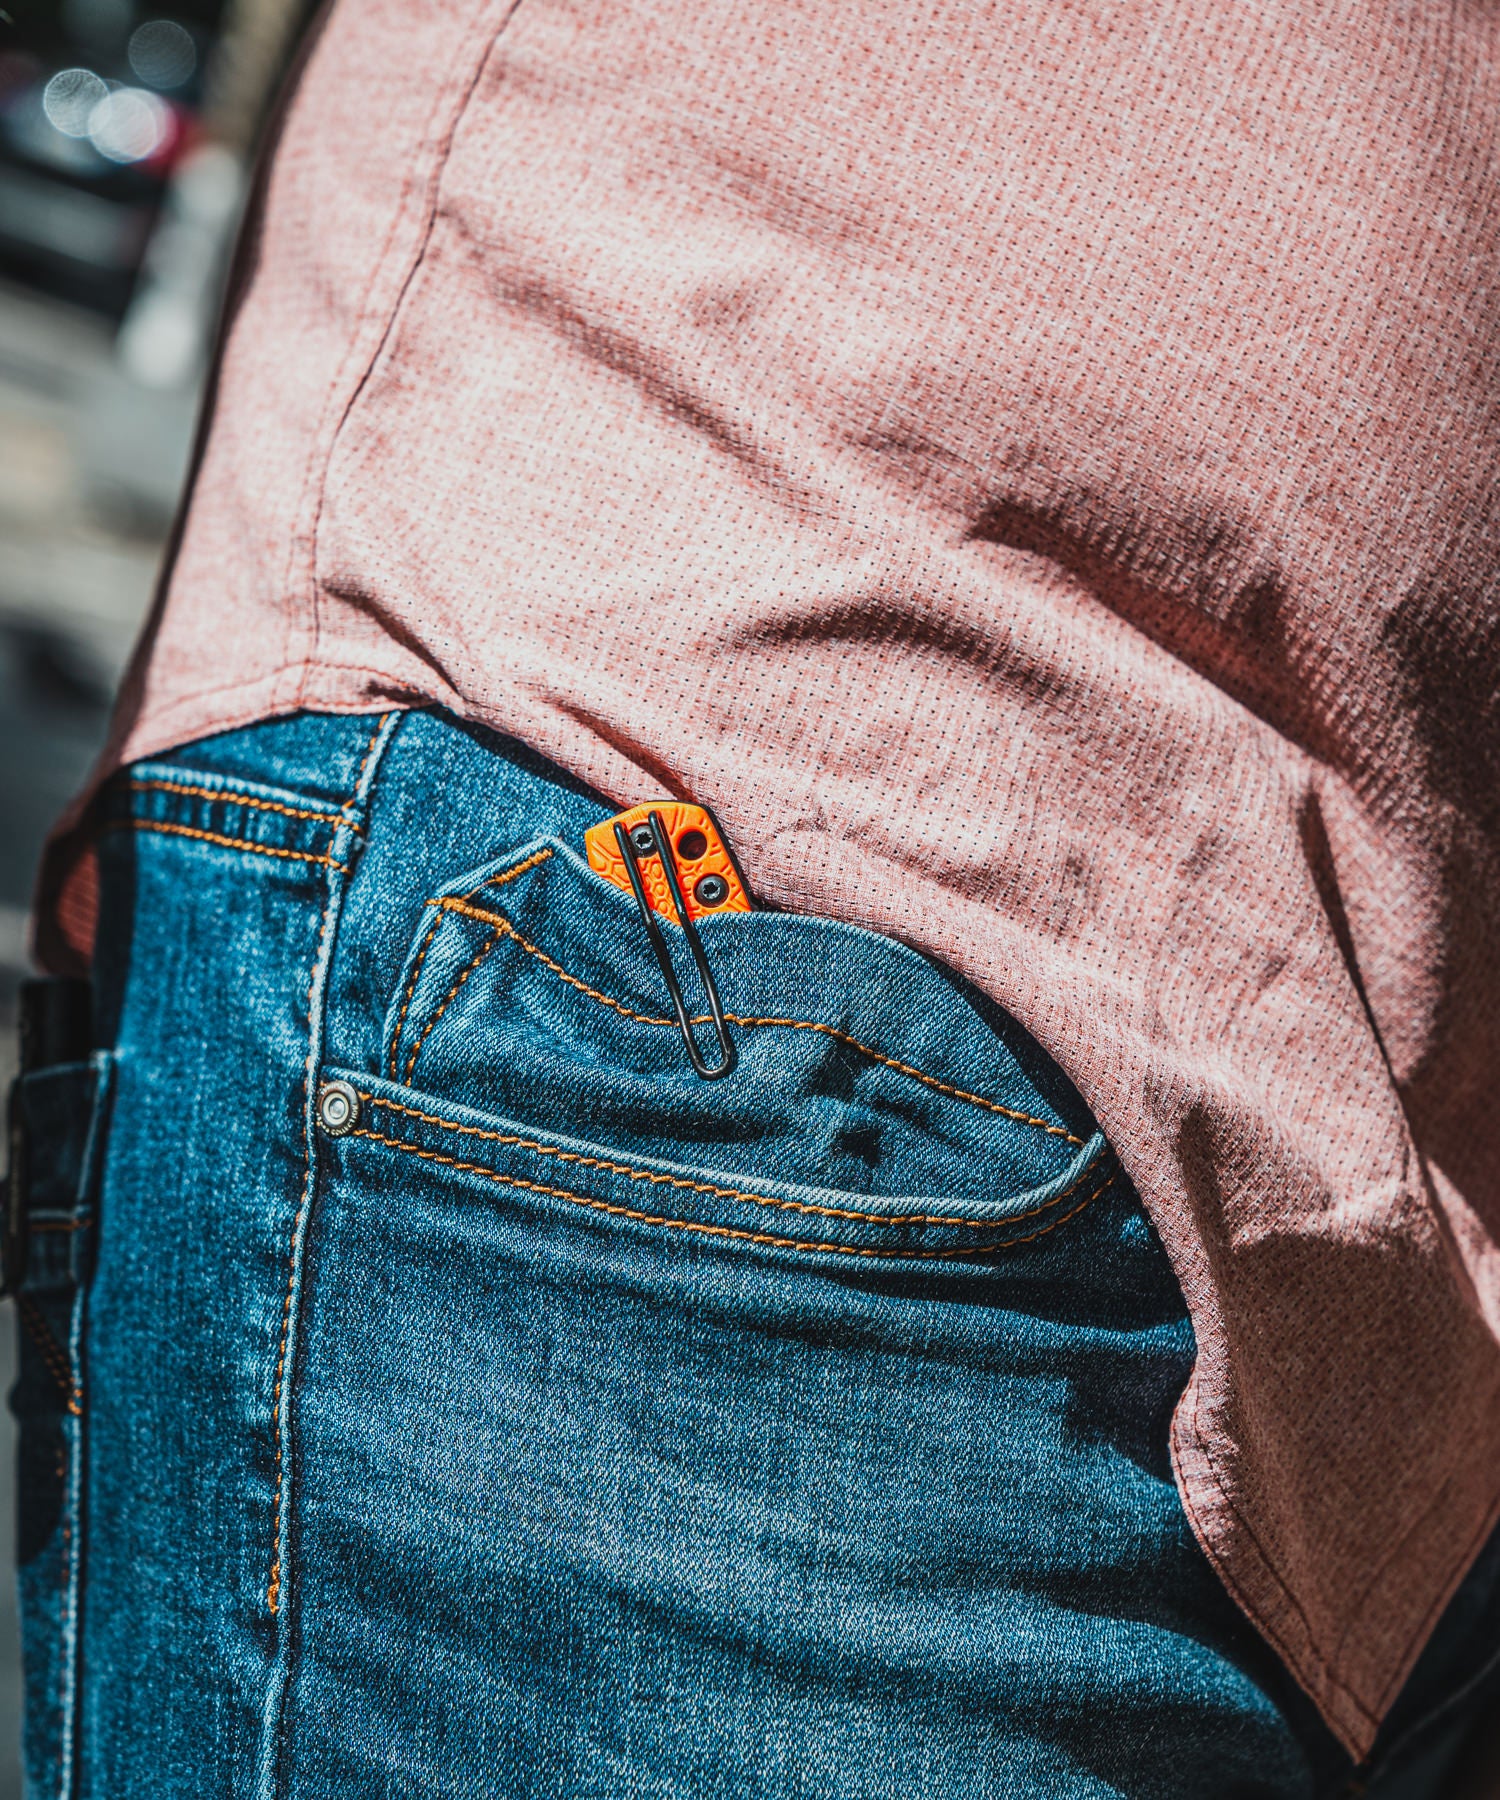 fox baby core arancione nella tasca dei jeans 5.11 di Paolo di BackPacco